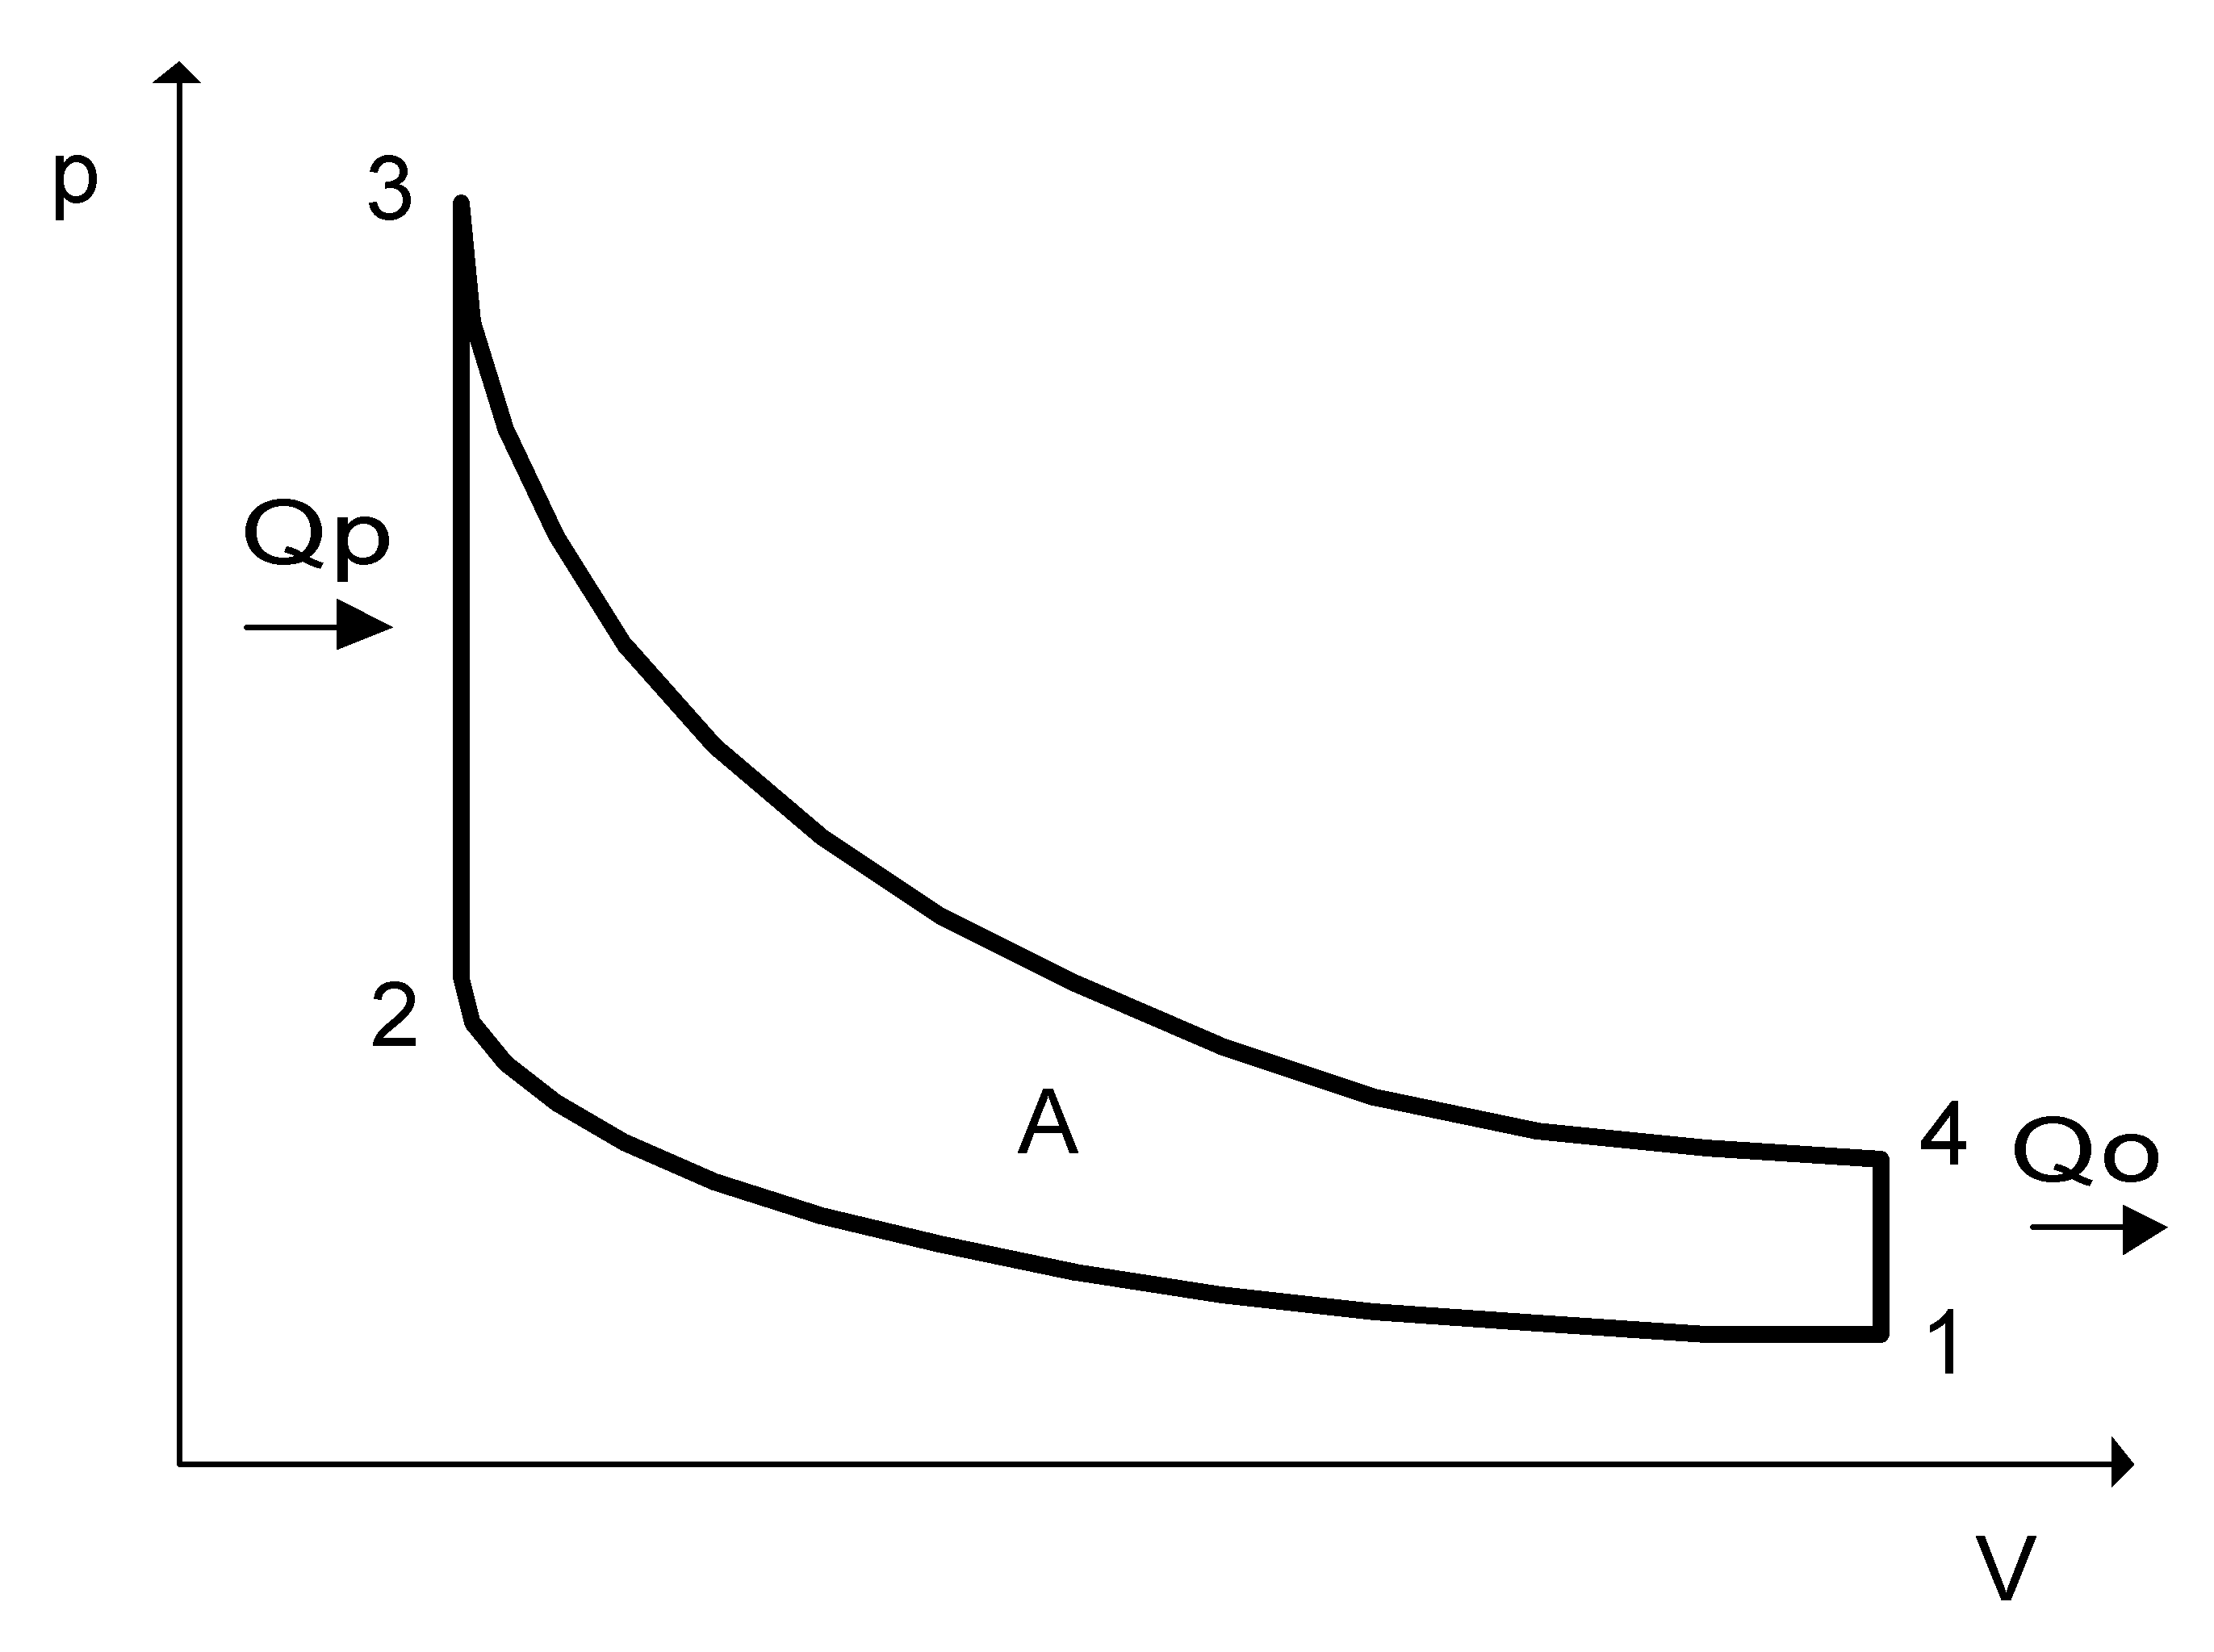 Http p v ru. Термодинамический цикл Отто. Двигатель внутреннего сгорания цикл Отто. Цикл Отто диаграмма. Цикл ДВС Отто диаграмма.